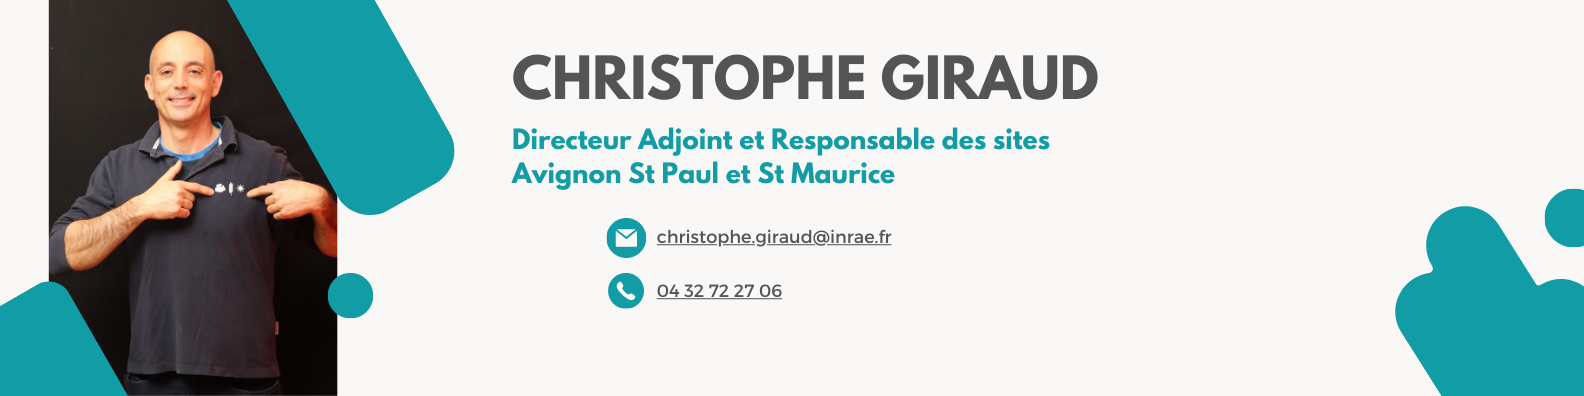 Christophe Giraud.png